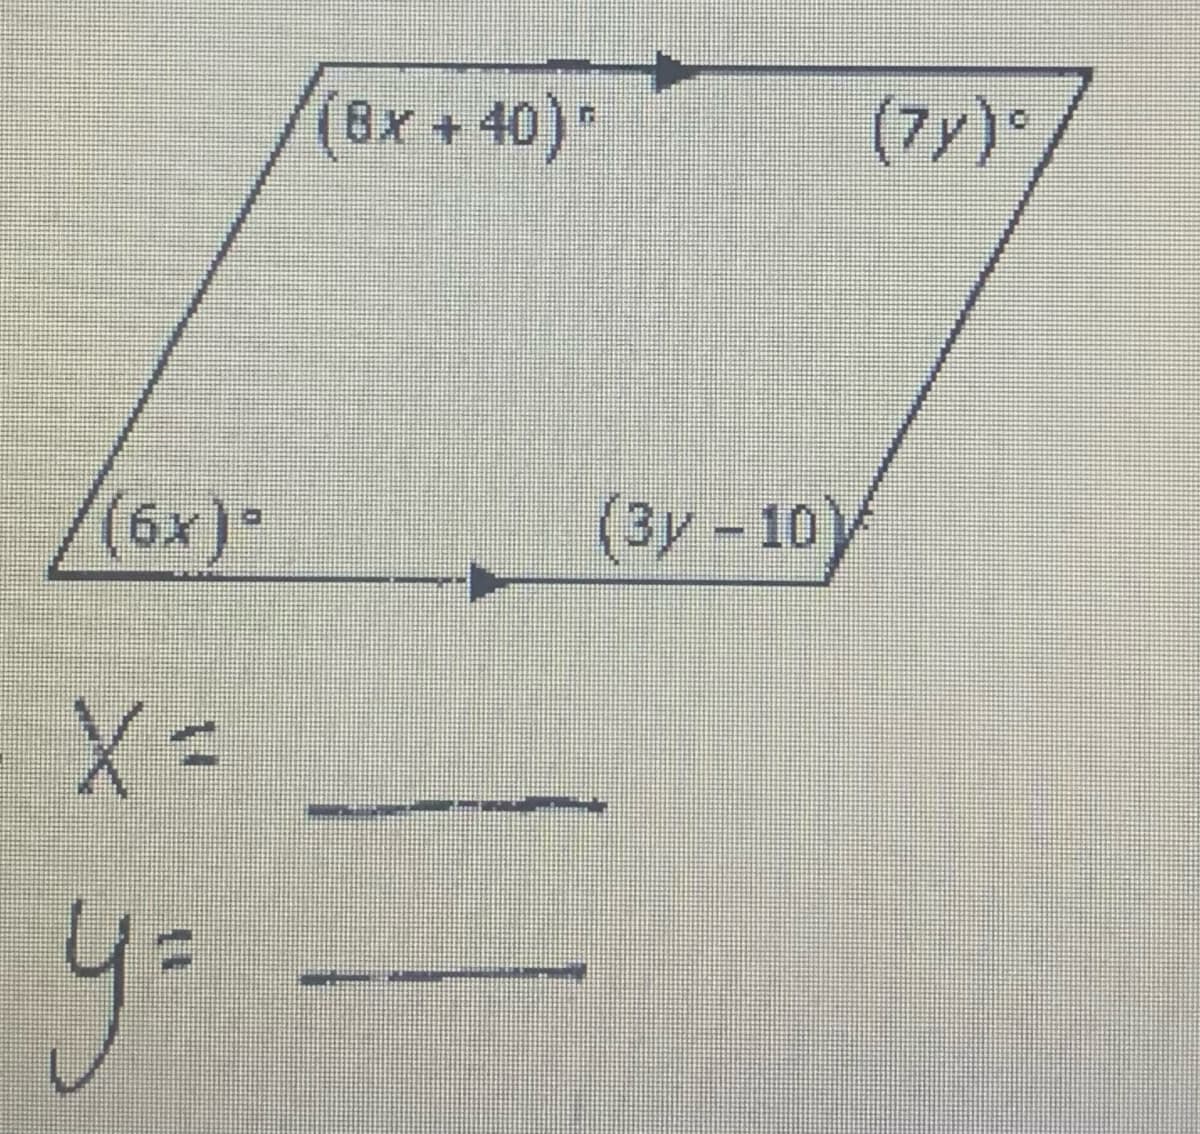 (8),
x
+ 40) *
(7y)°
(3y – 10)
y.
